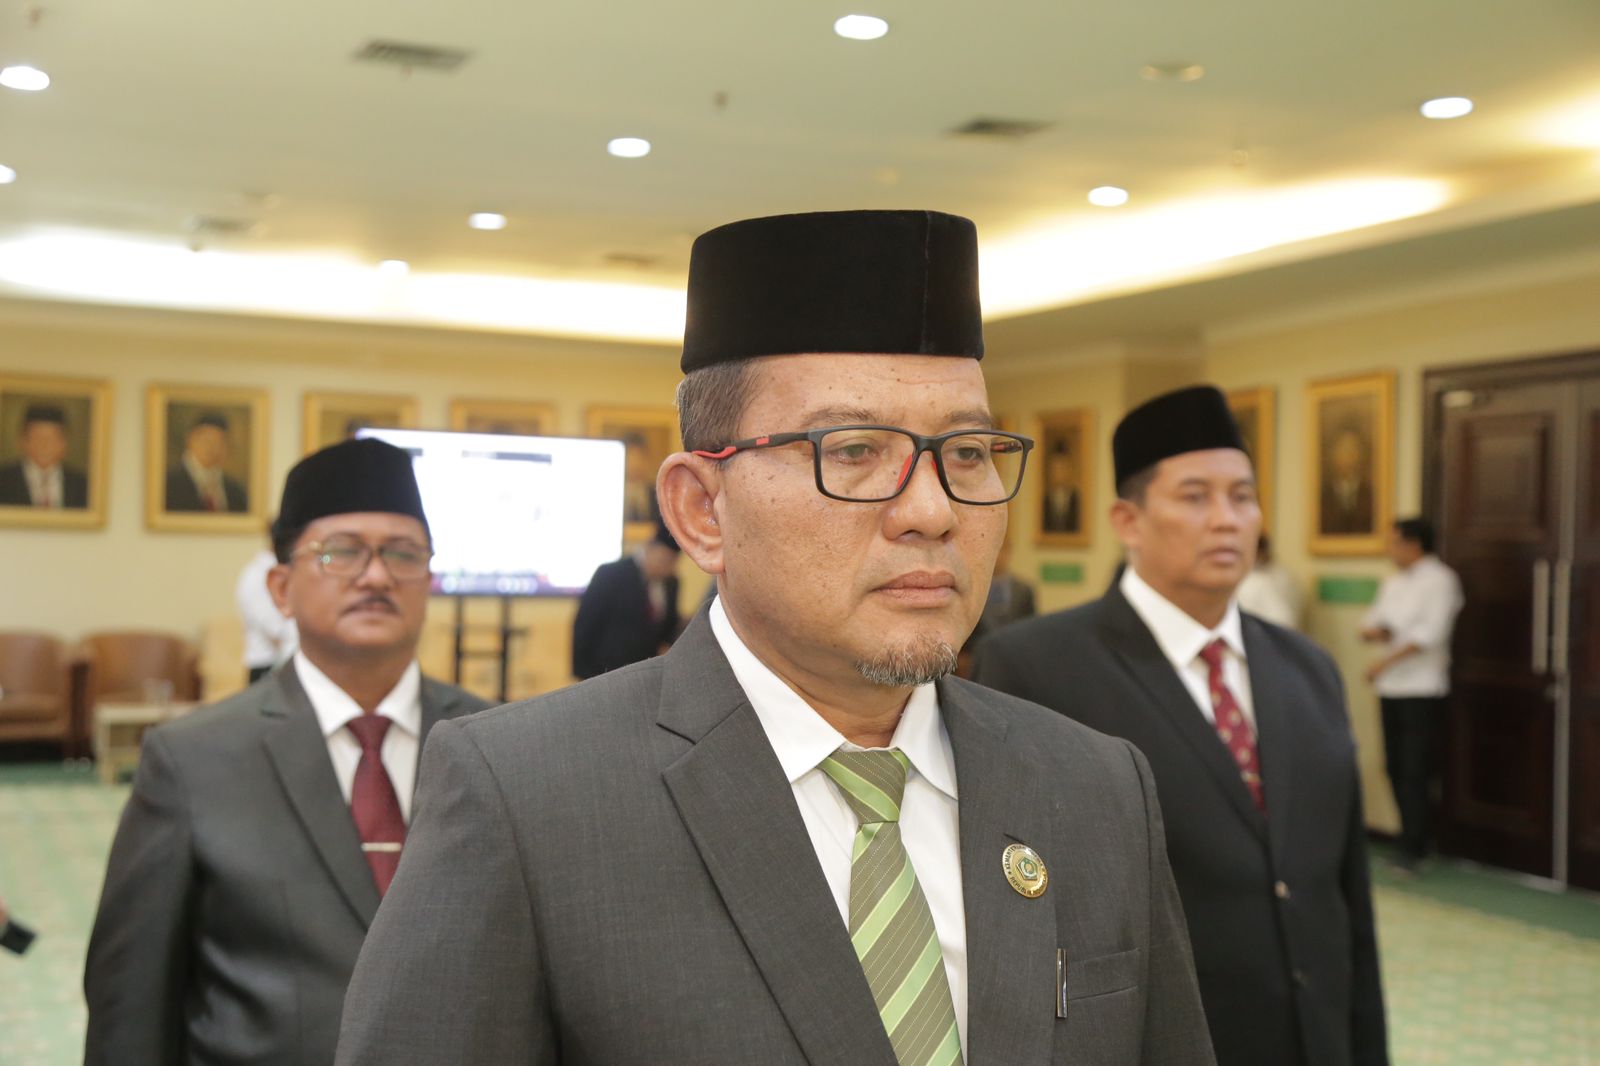 Mengenal Lebih Dekat Azhari Kakanwil Kemenag Aceh Yang Baru